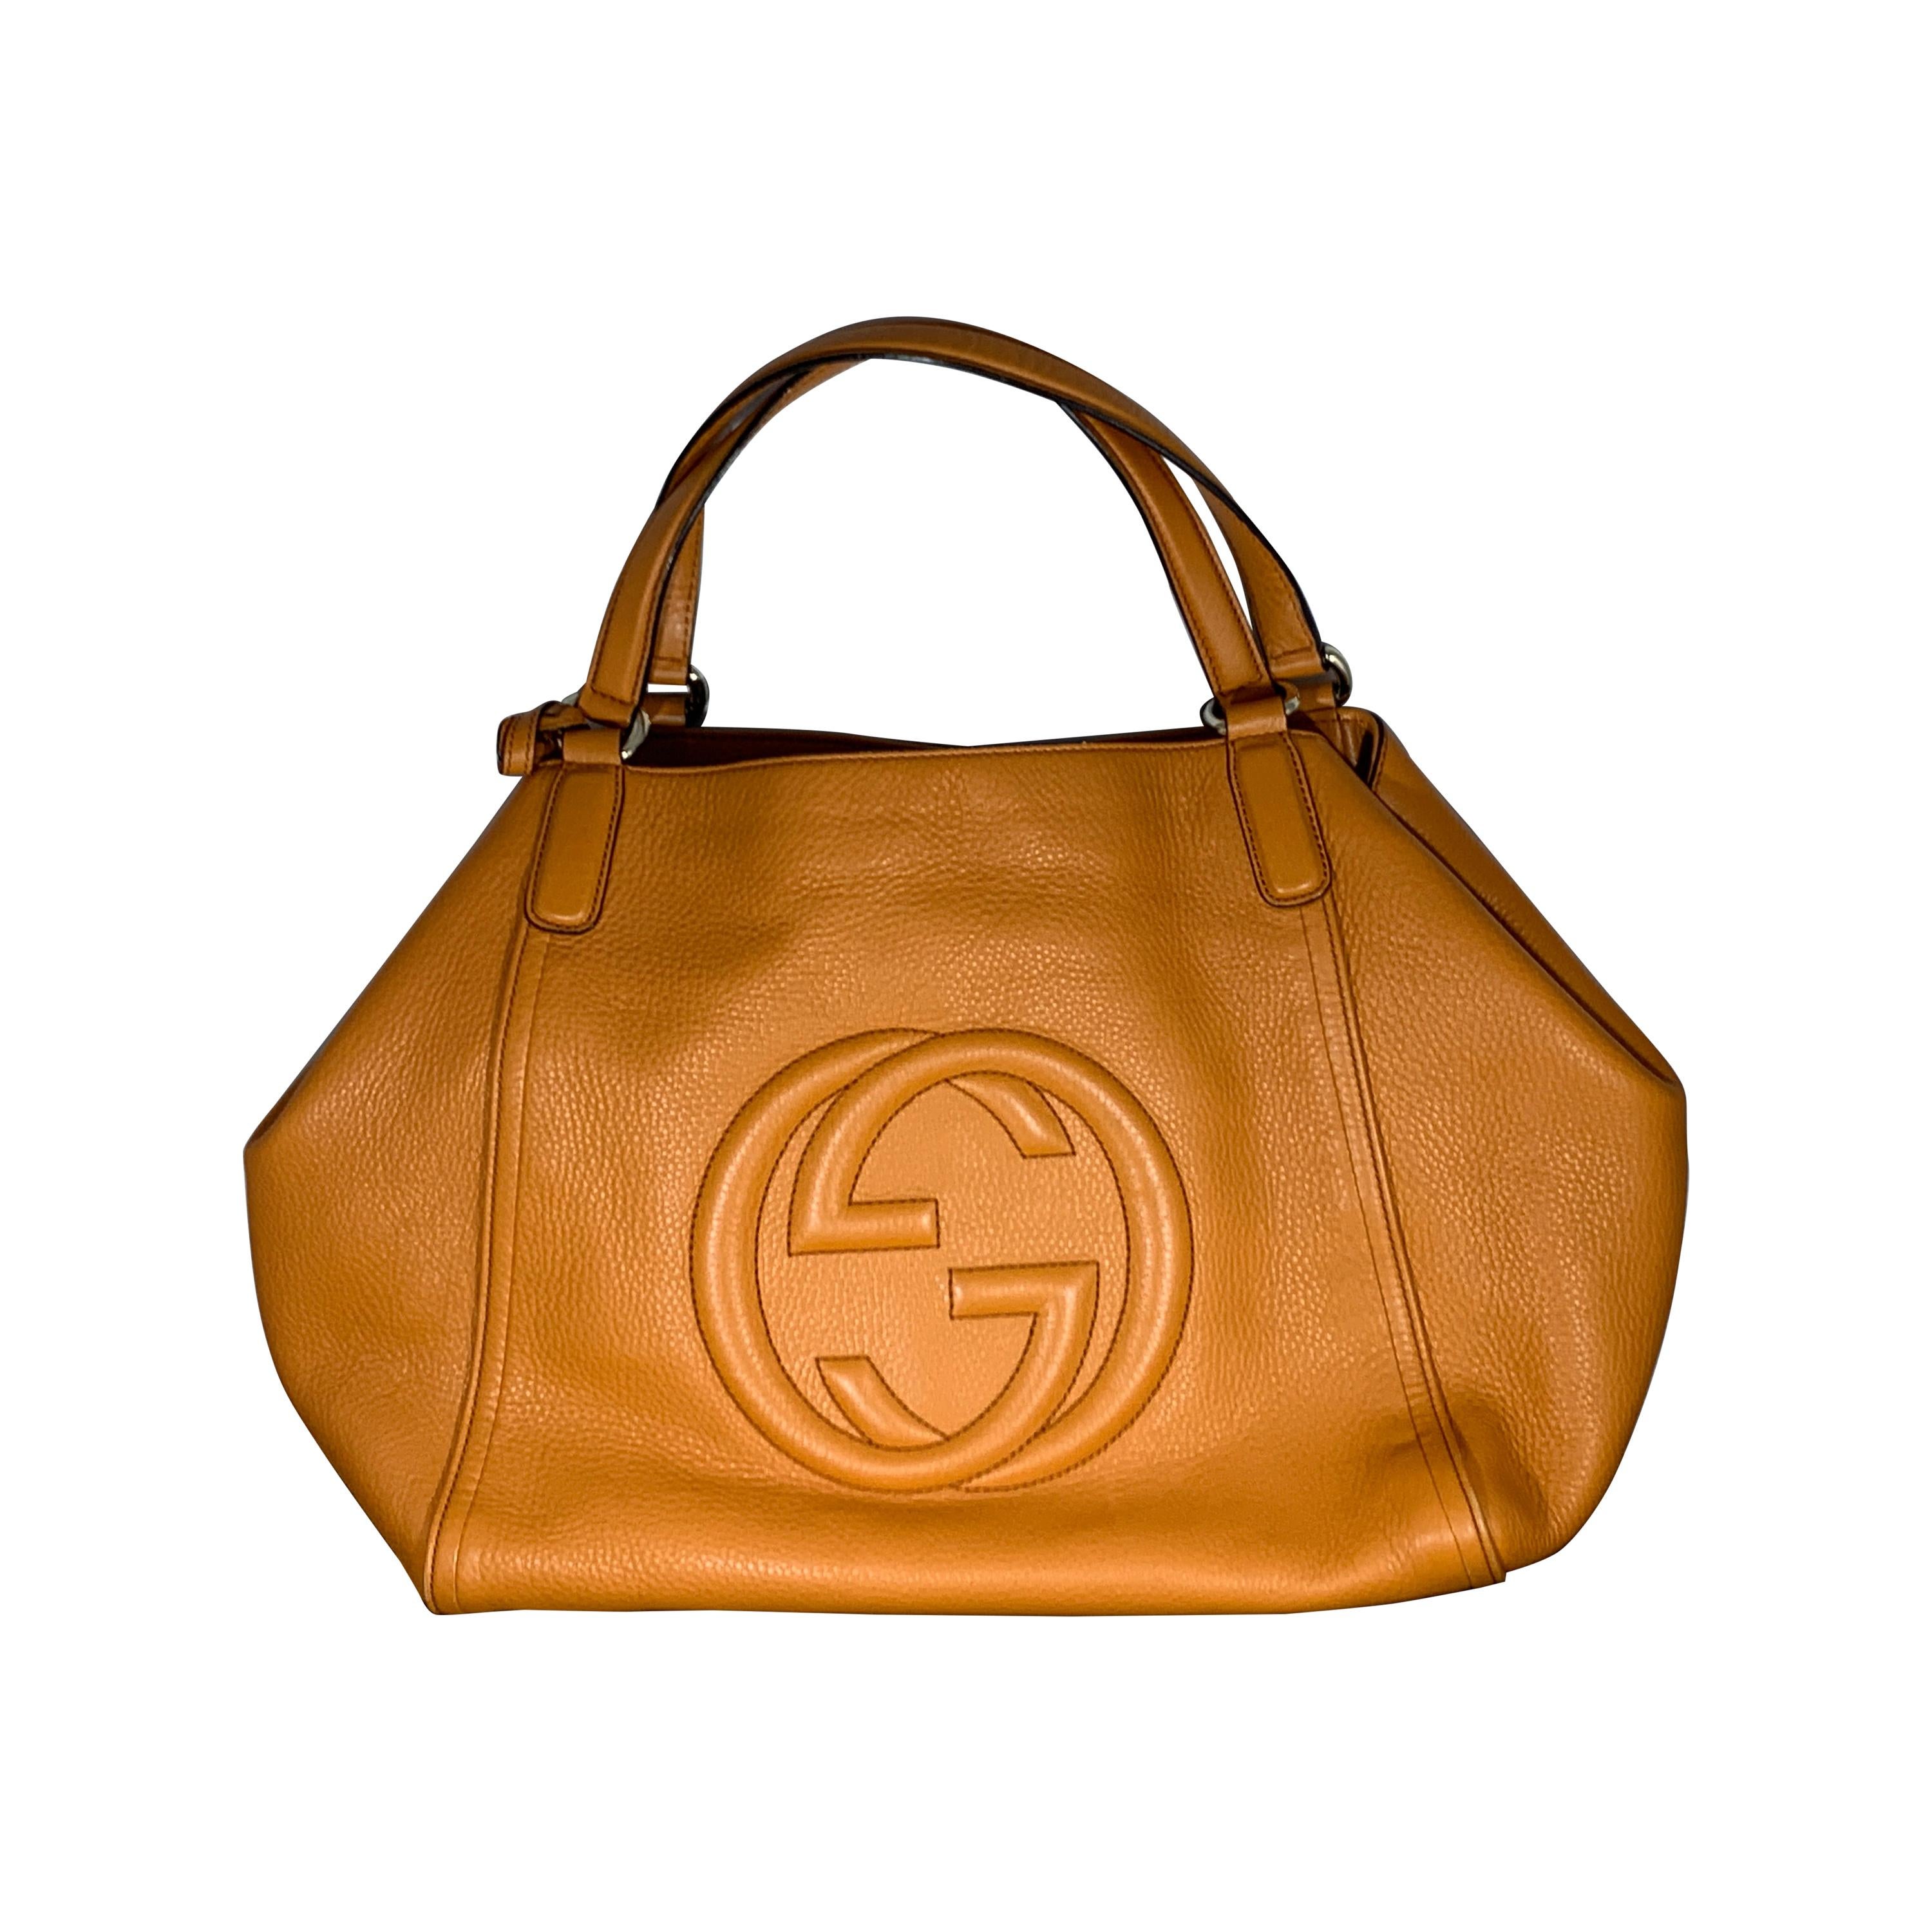 Gucci  Hand Bag Soho Leather Shoulder Bag, Orange Chic Tote